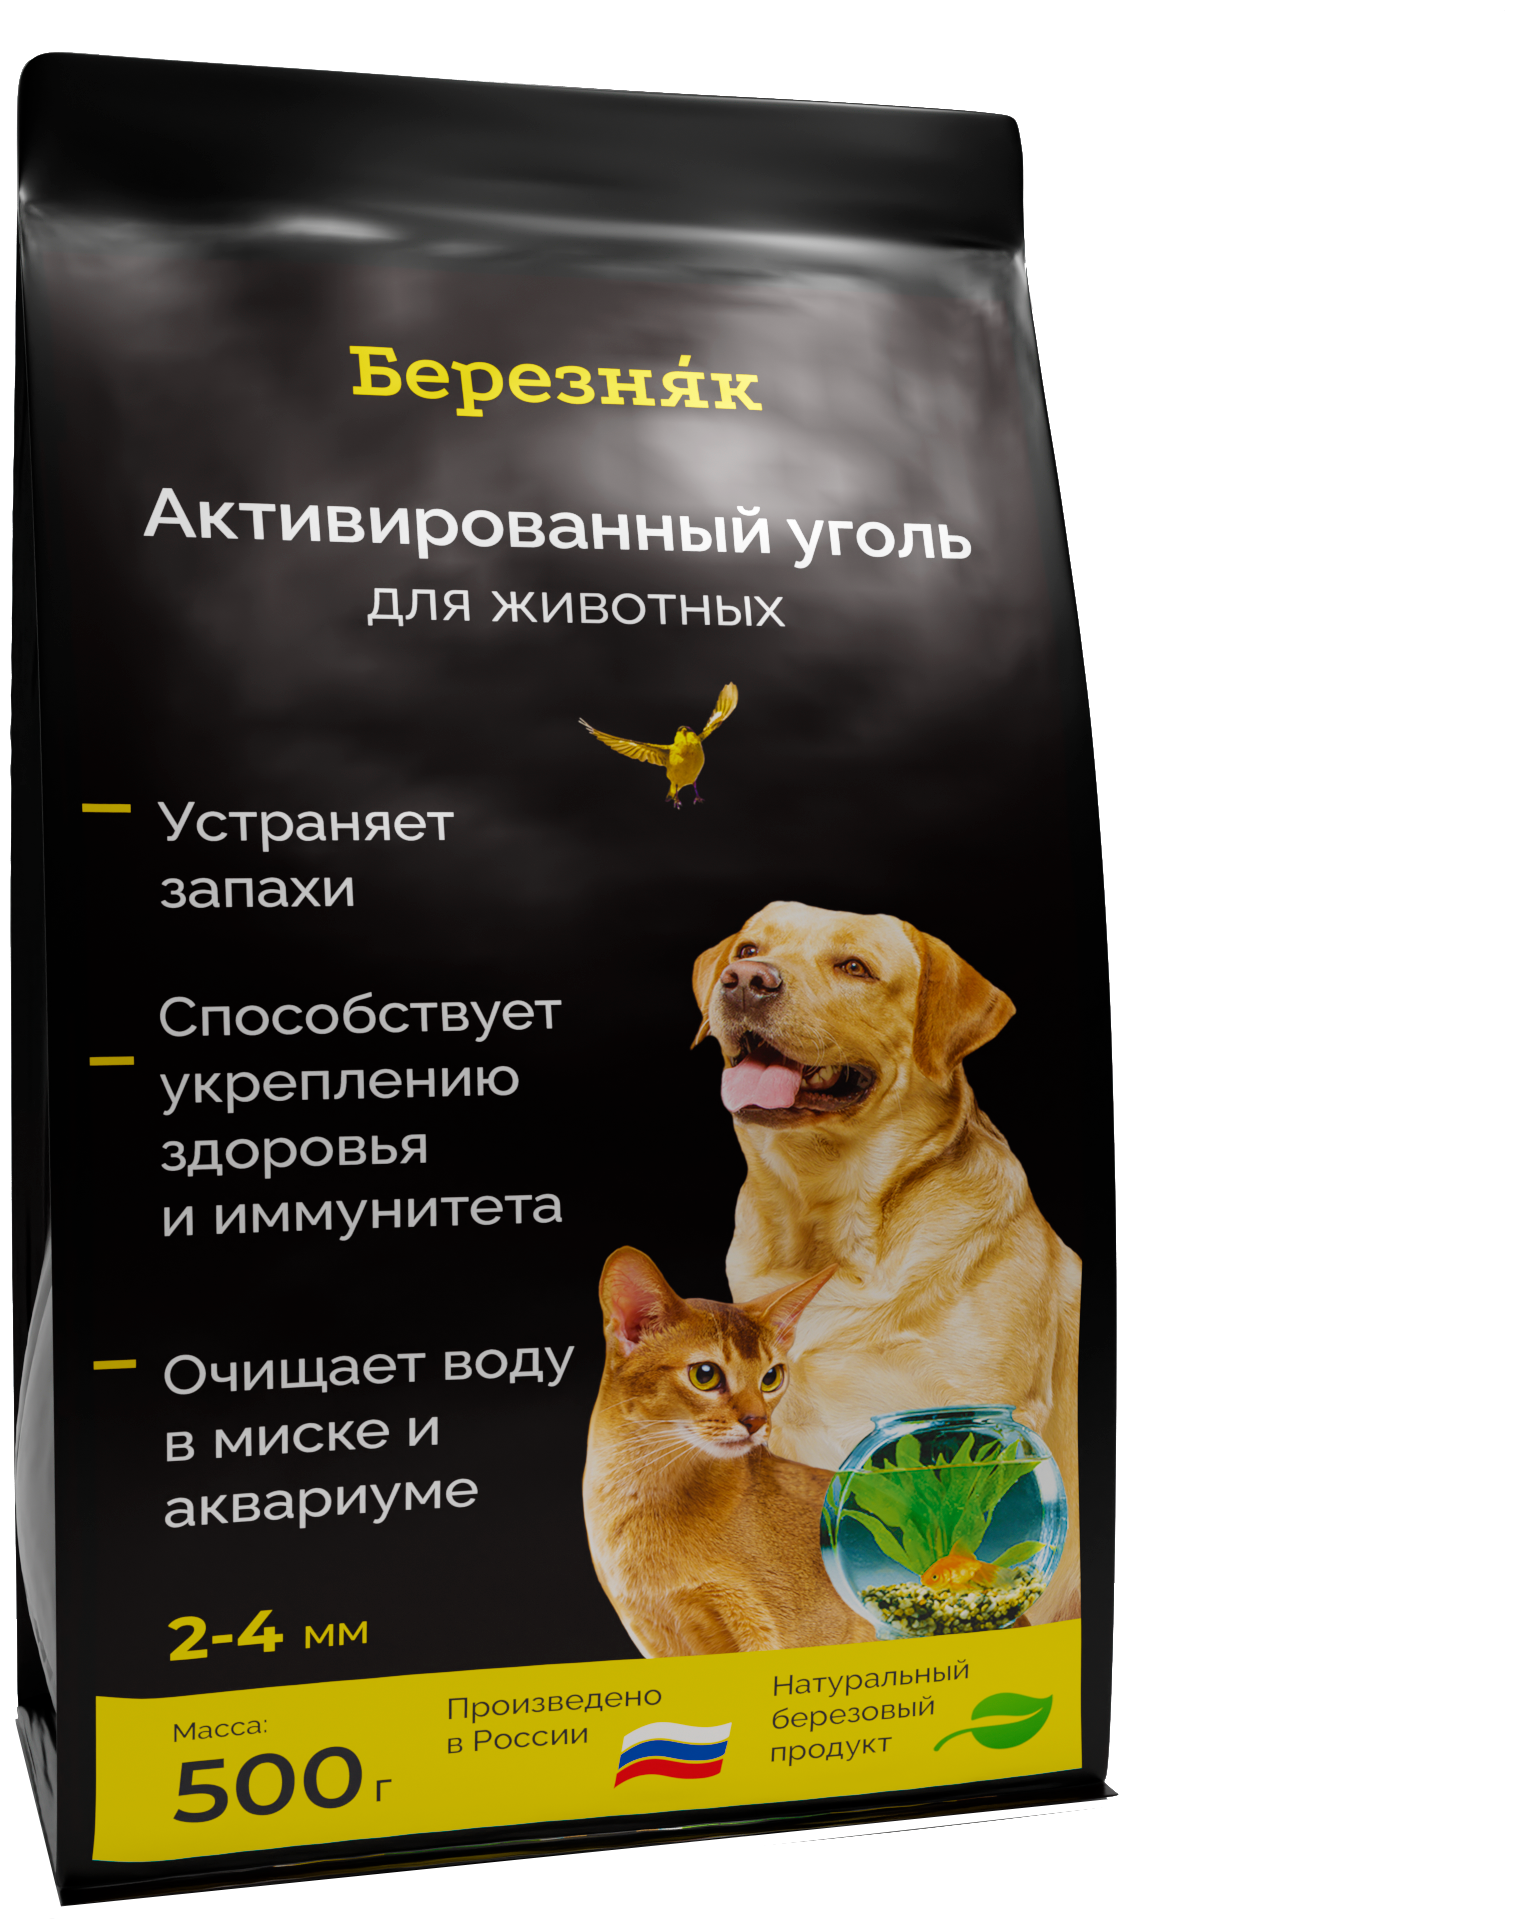 Для животных Активированный уголь в наполнитель для кошачьего туалета березняк 500 грамм